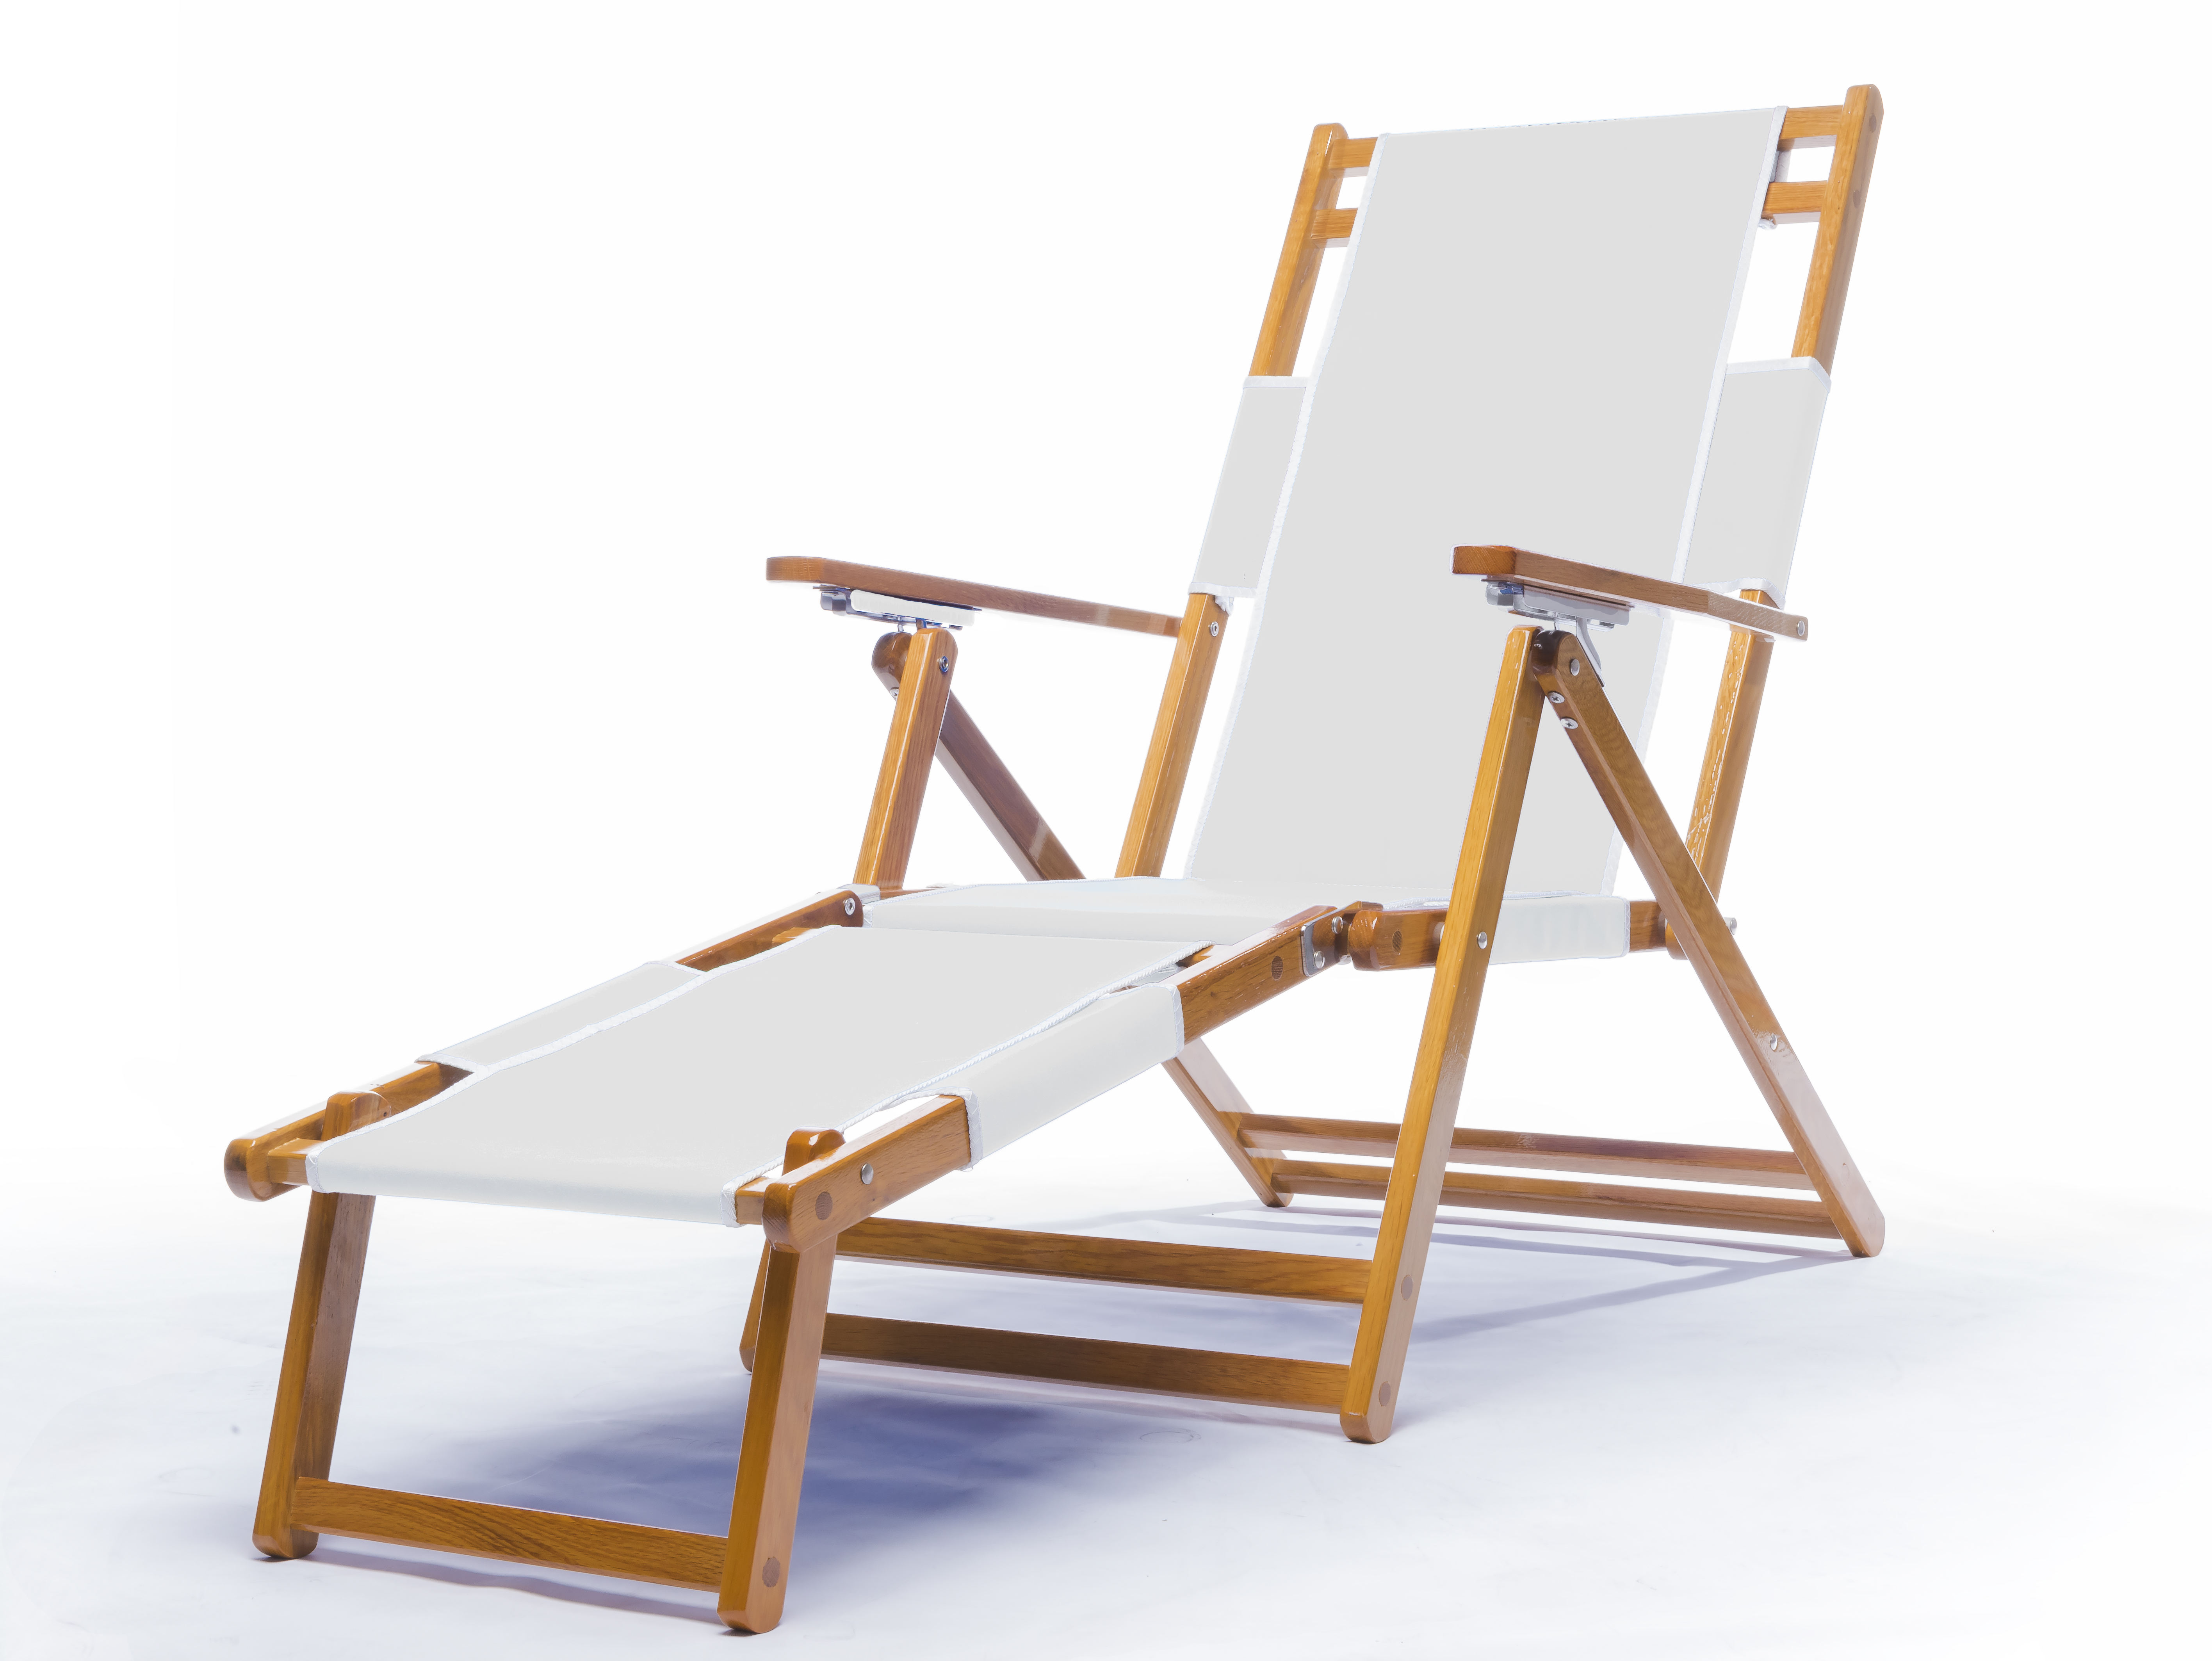 Beach Chair
White
$189.00
